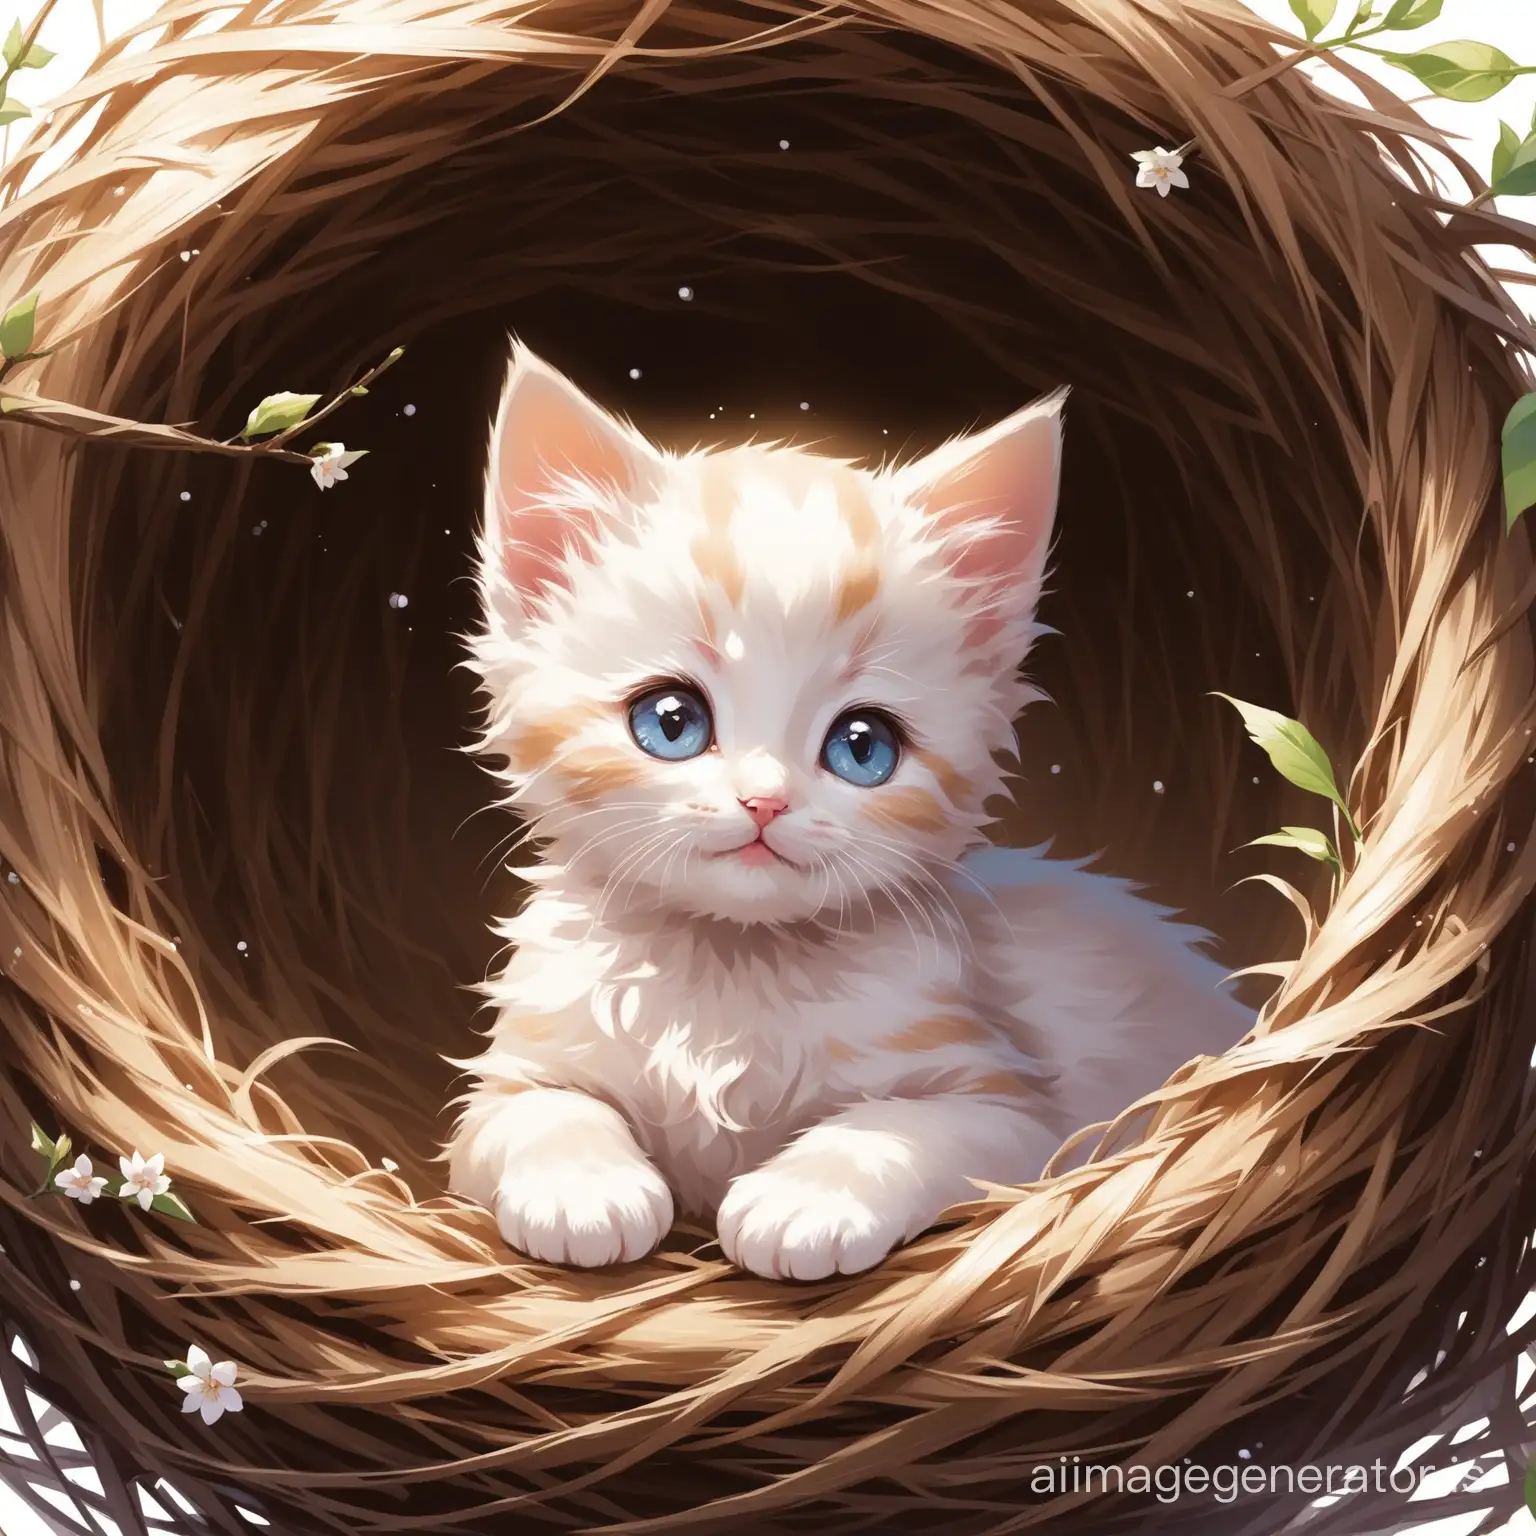 Adorable-Kitten-Nestled-in-a-Cozy-Nest-Cute-Animal-Artwork